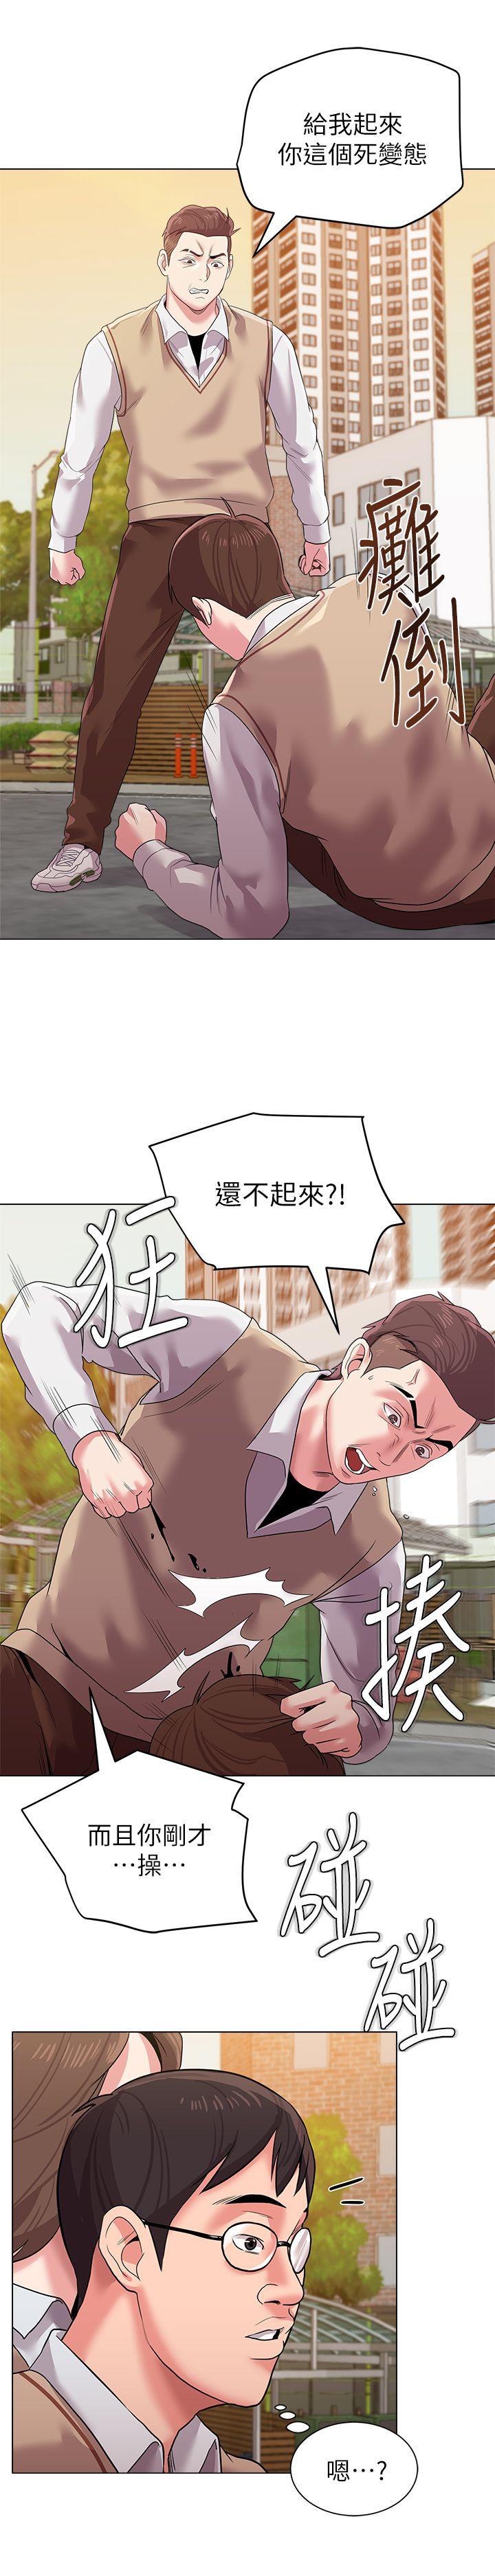 韩国污漫画 墮落教師 第11话-不速之客 9